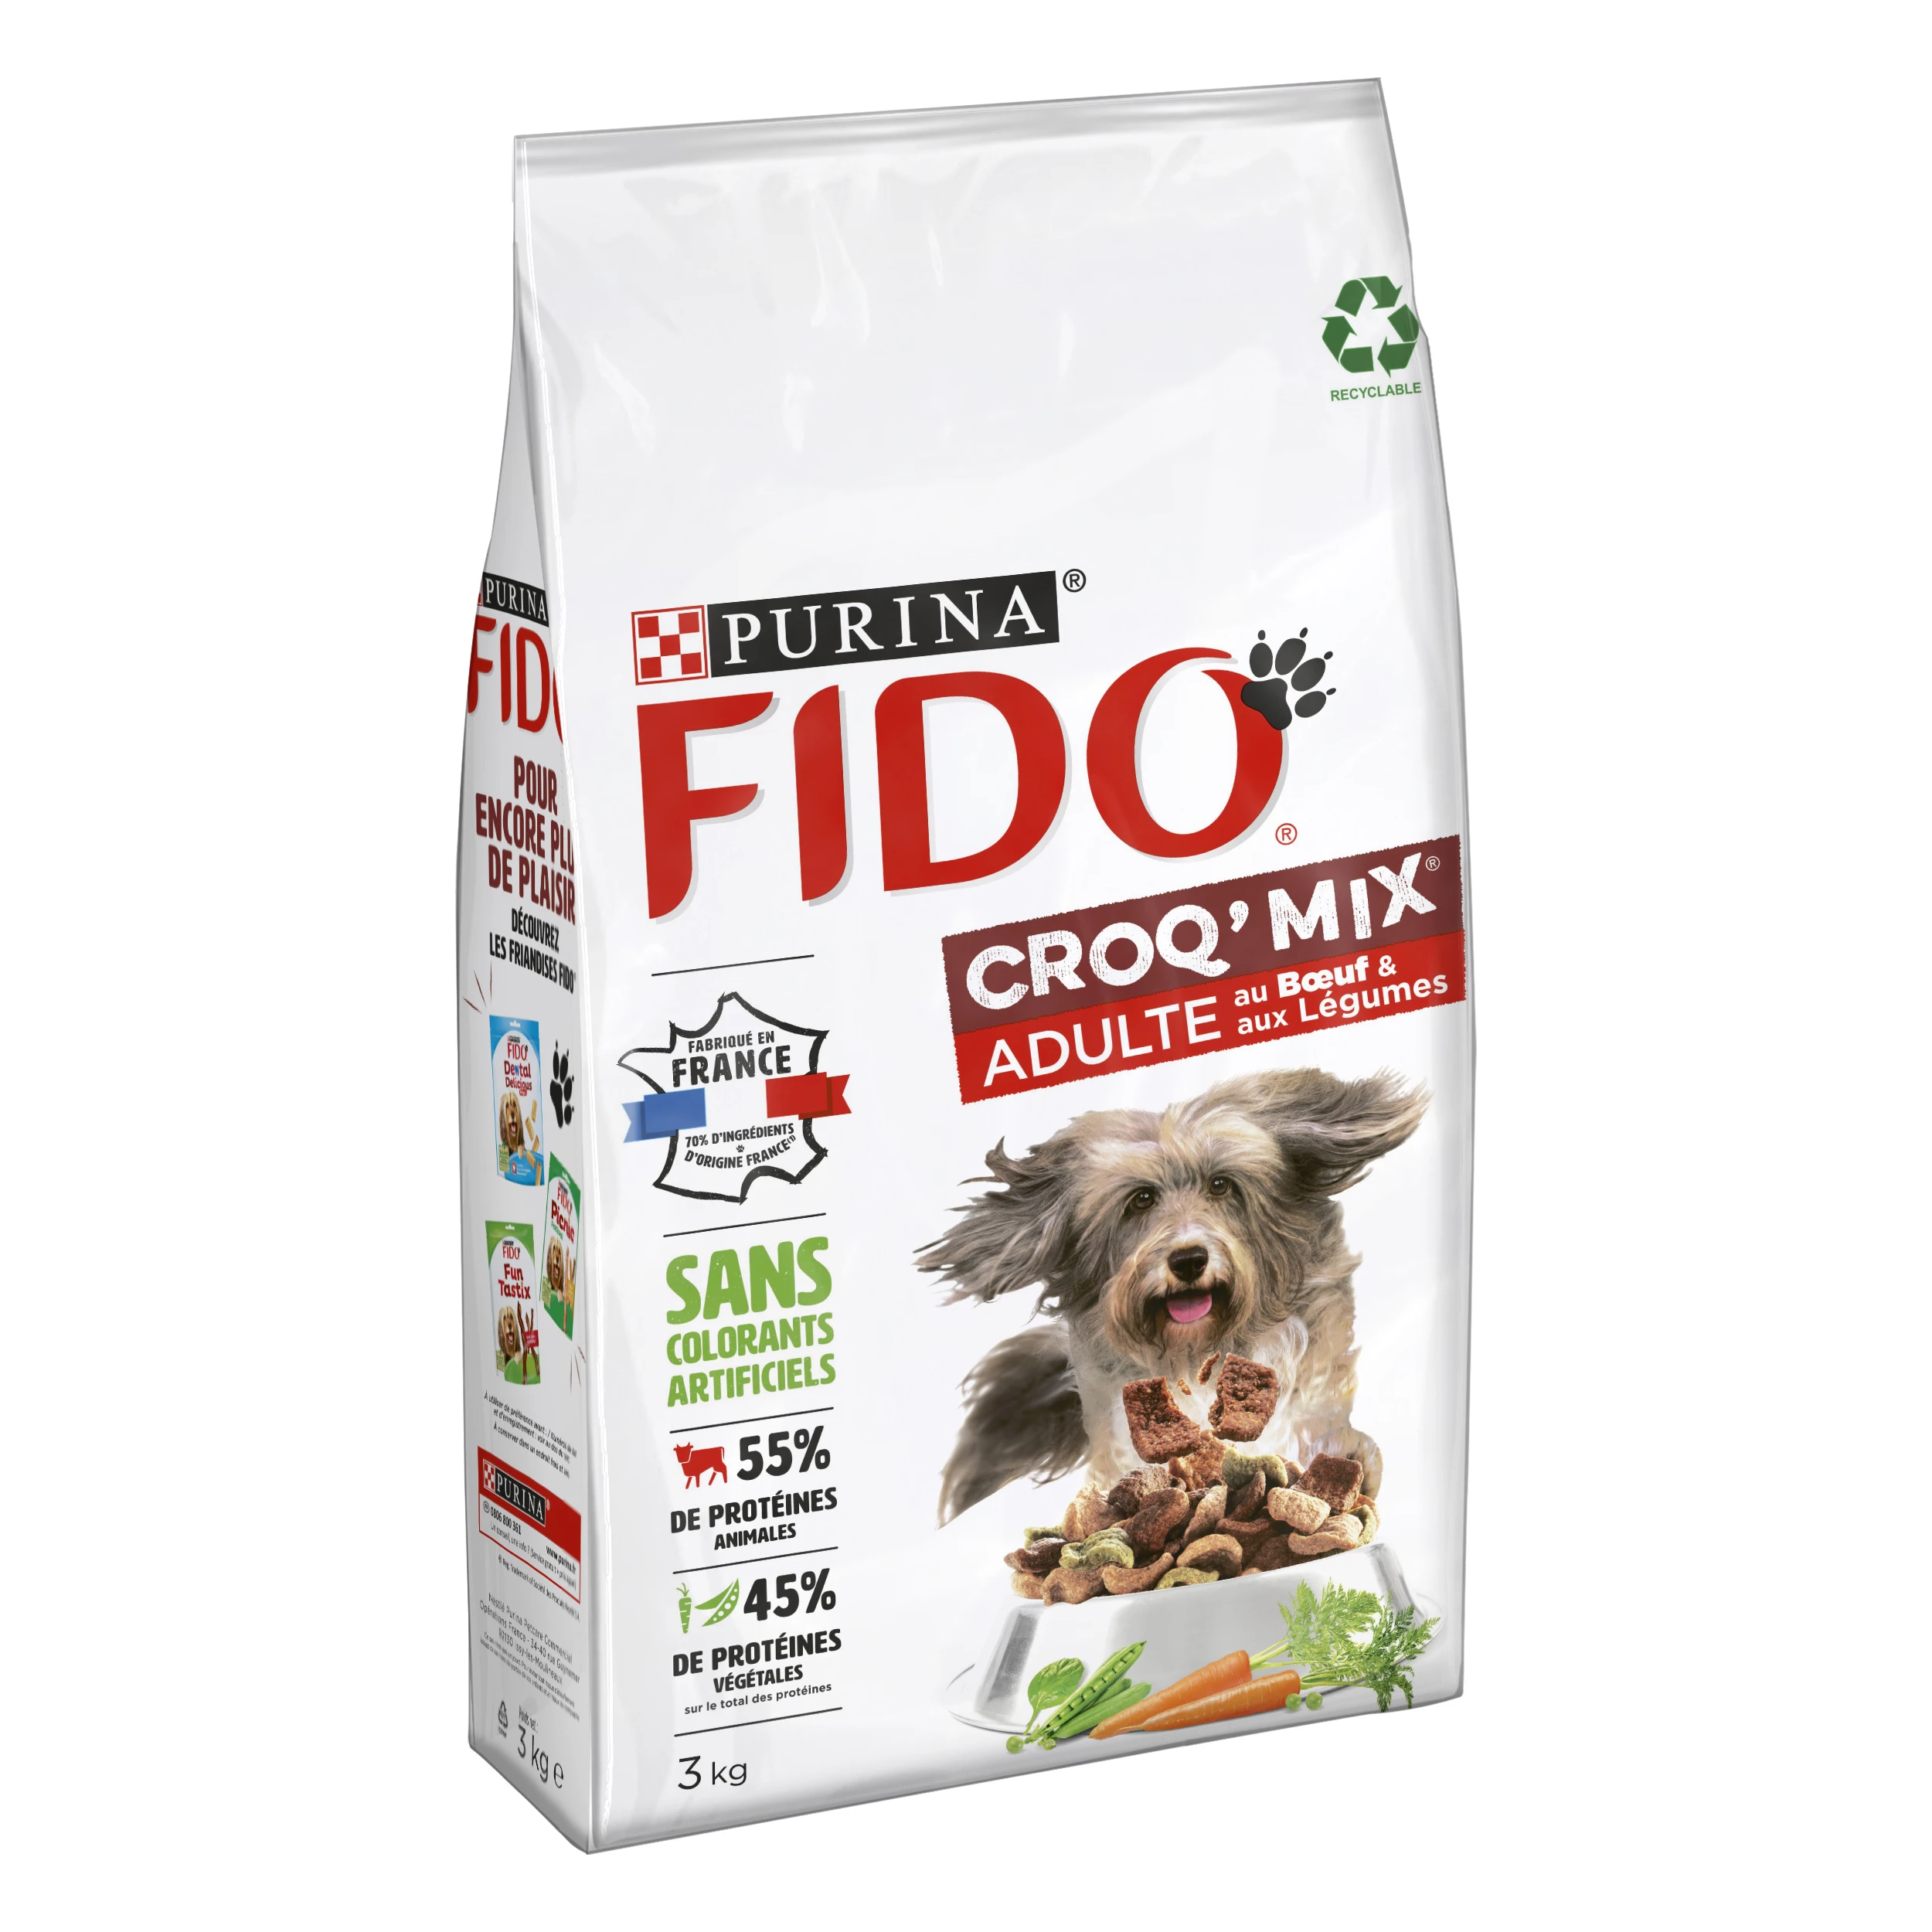 Croq' mix thức ăn cho chó trưởng thành với thịt bò và rau củ 3kg - PURINA FIDO